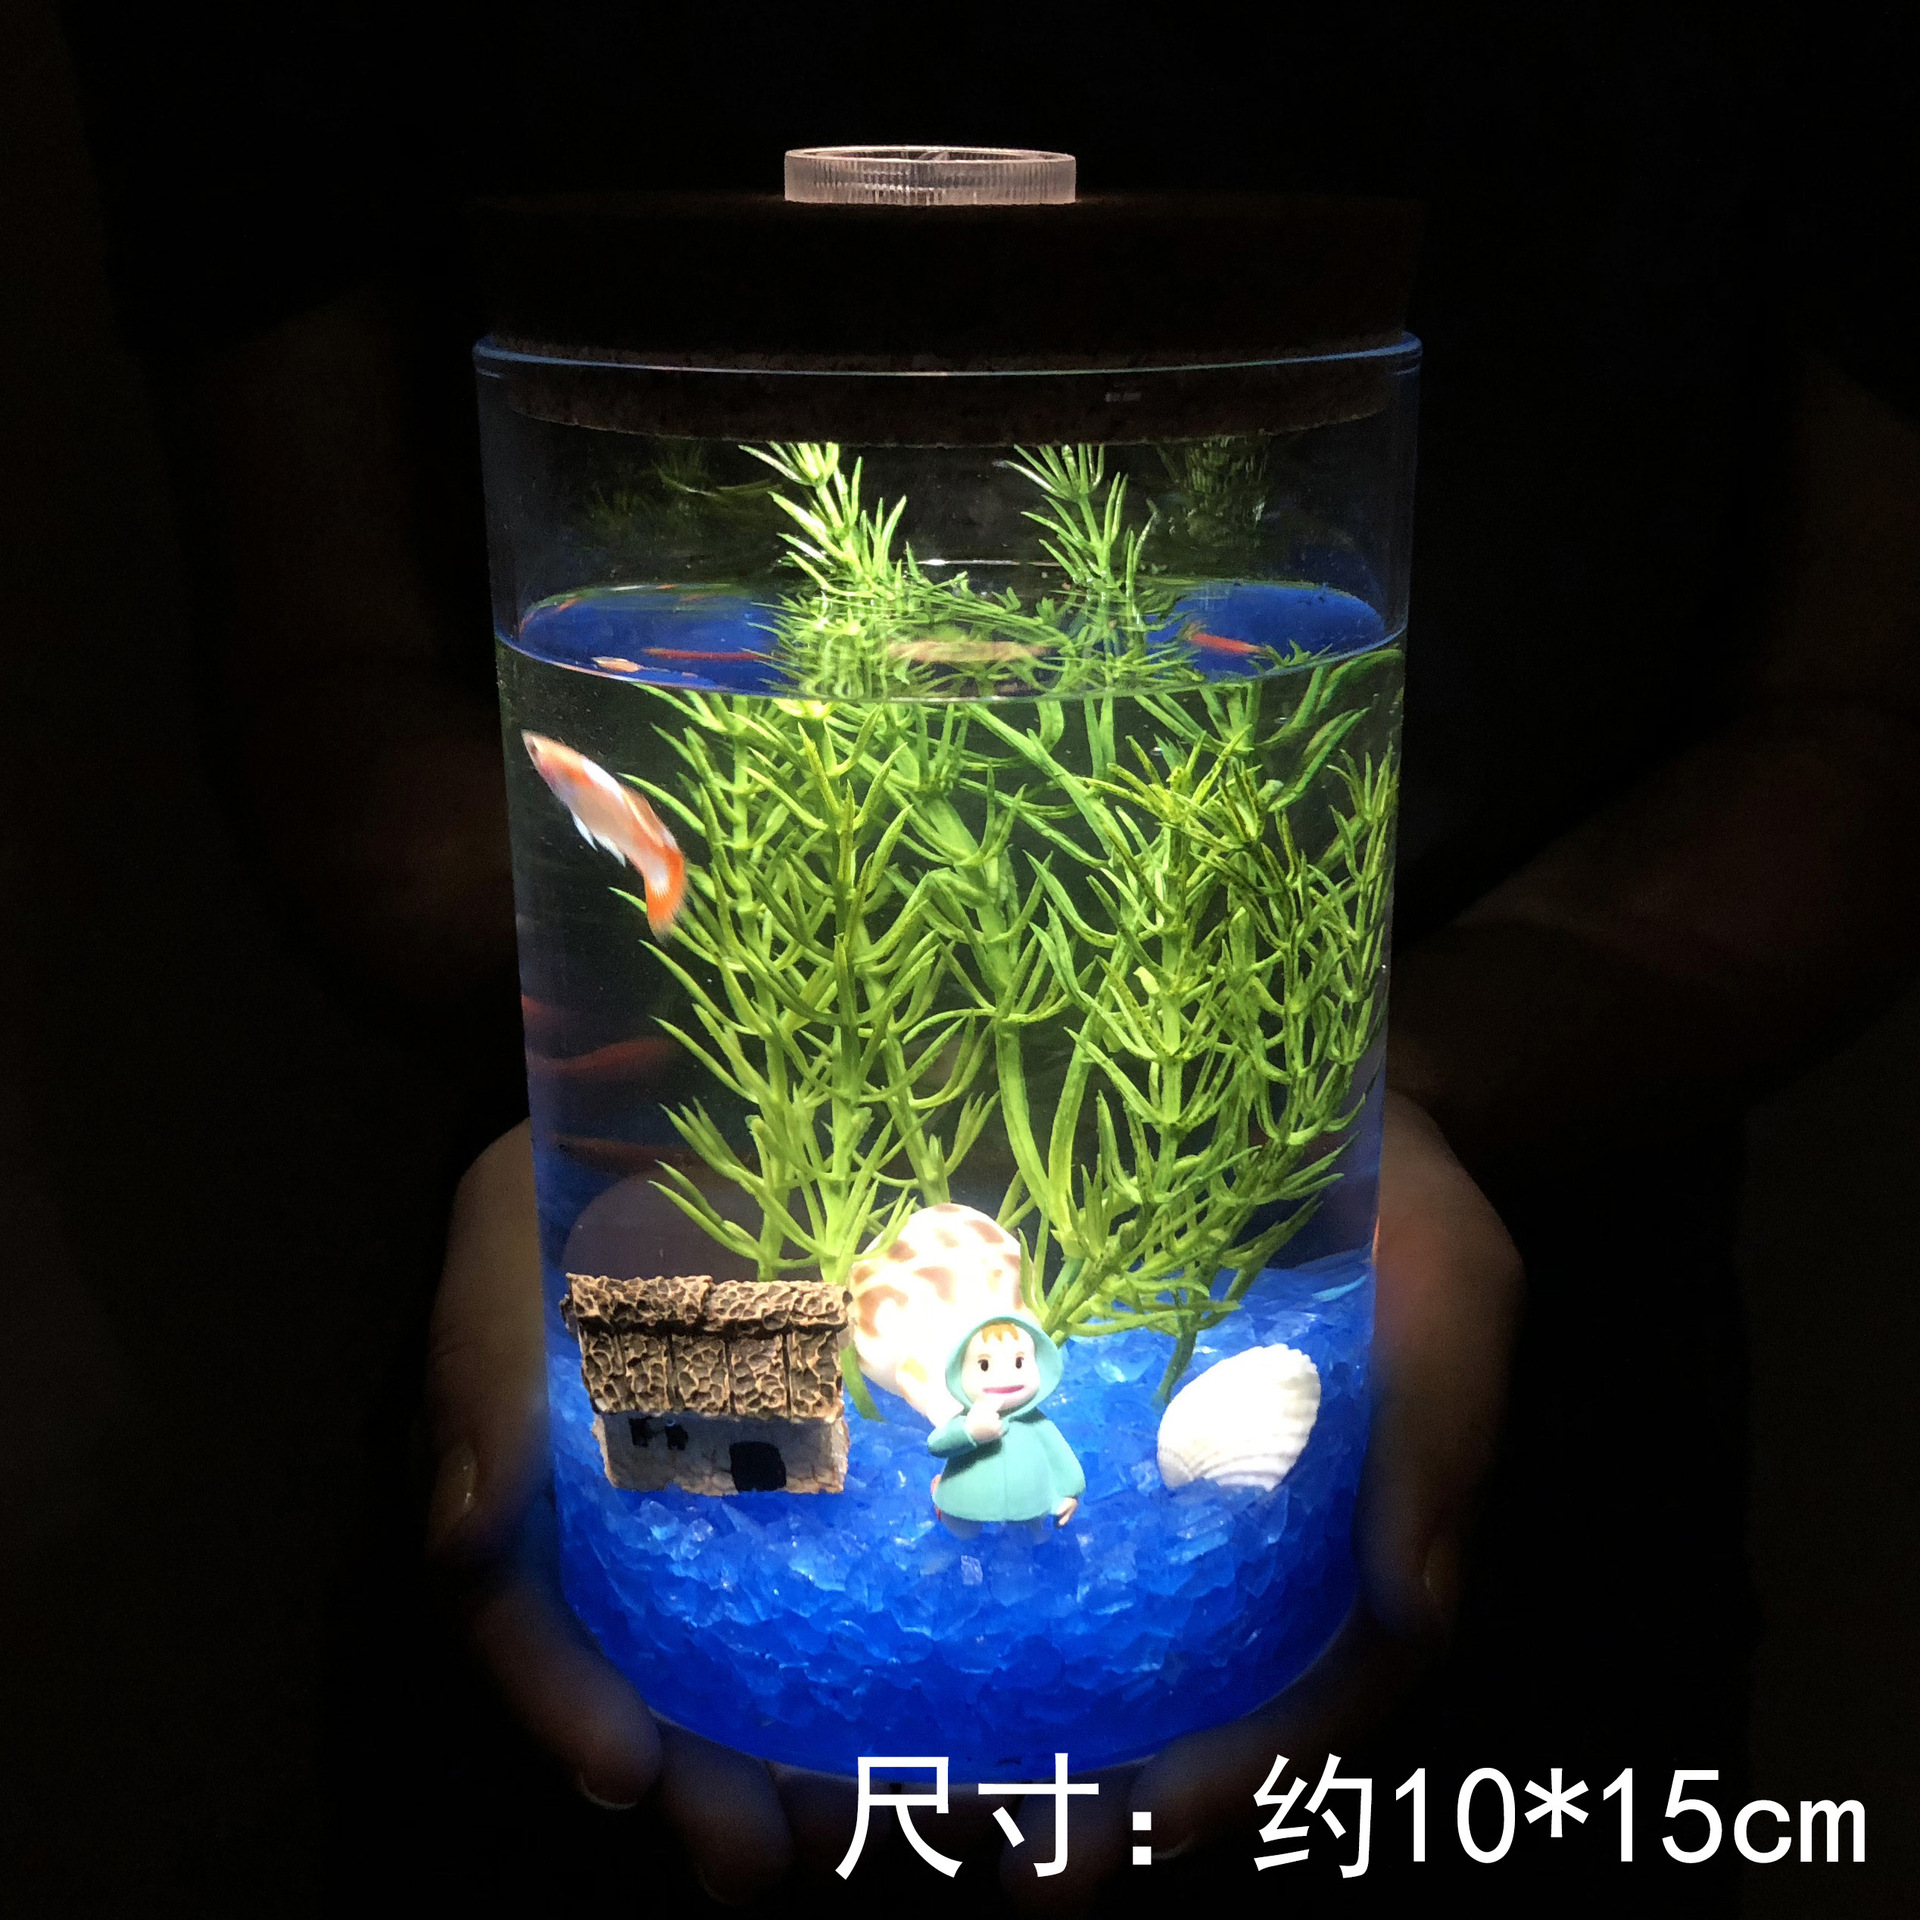 创意海底微景观DIY生态瓶套装带七彩灯夜光透明玻璃瓶家居摆件|ms